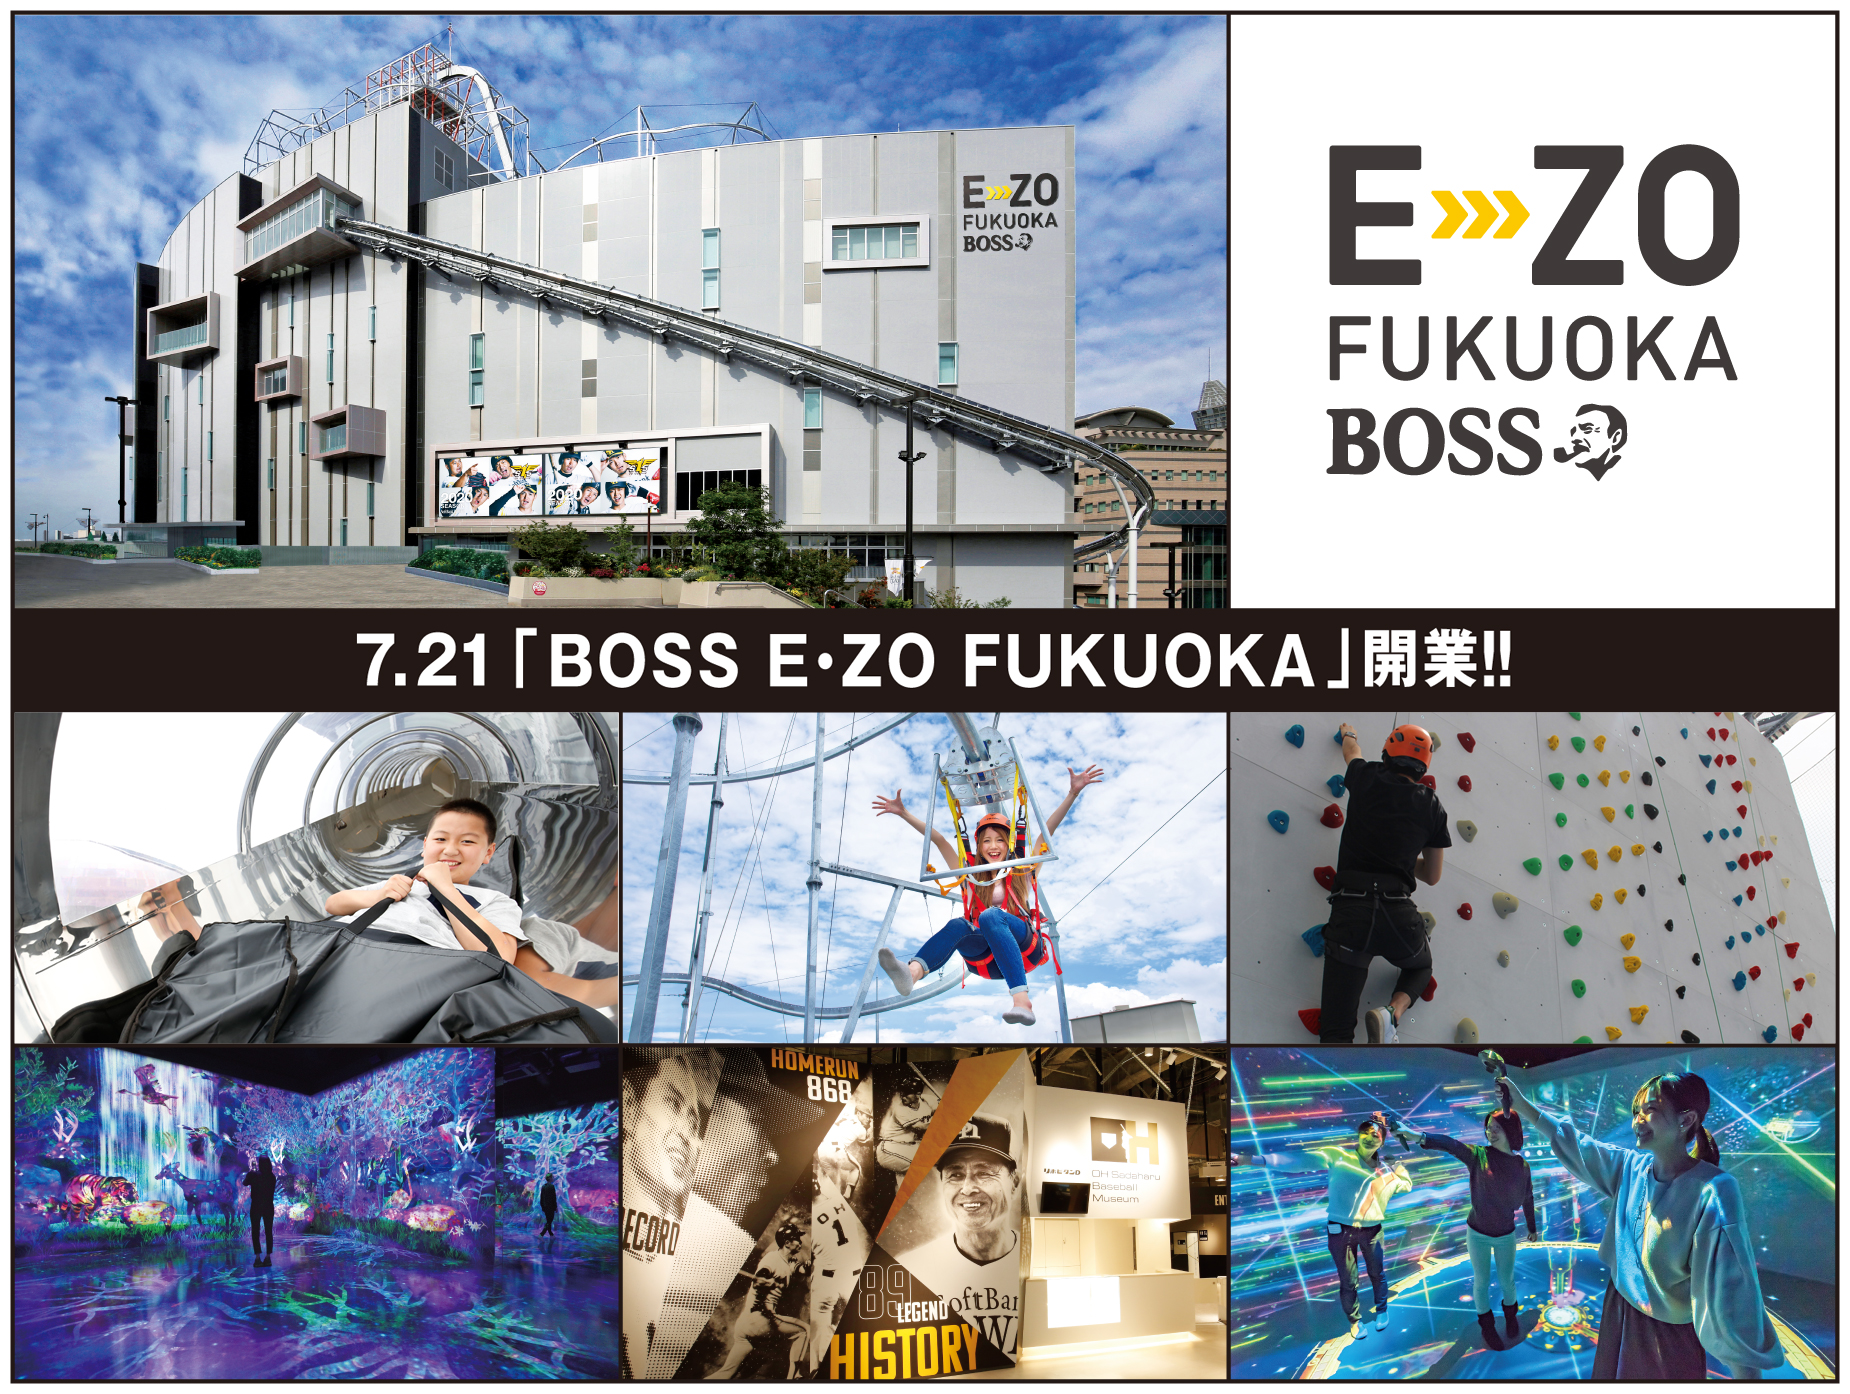 福岡新名所 7 21開業へ Boss E Zo Fukuoka チケット発売開始 福岡ソフトバンクホークス株式会社のプレスリリース